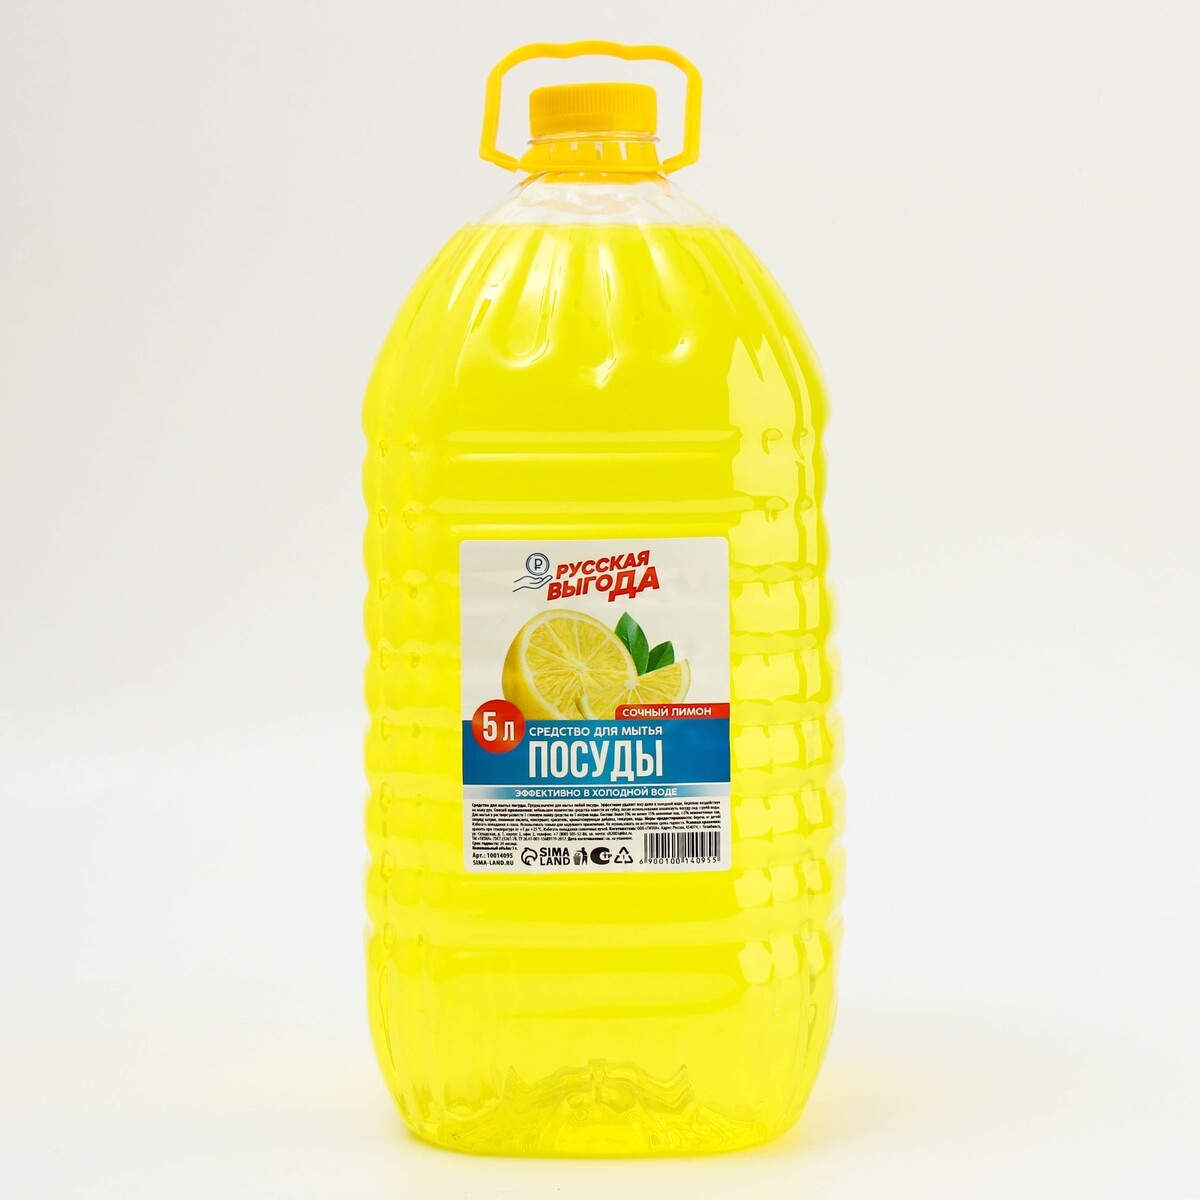 Средство для мытья посуды, 5 л, аромат лимона, русская выгода